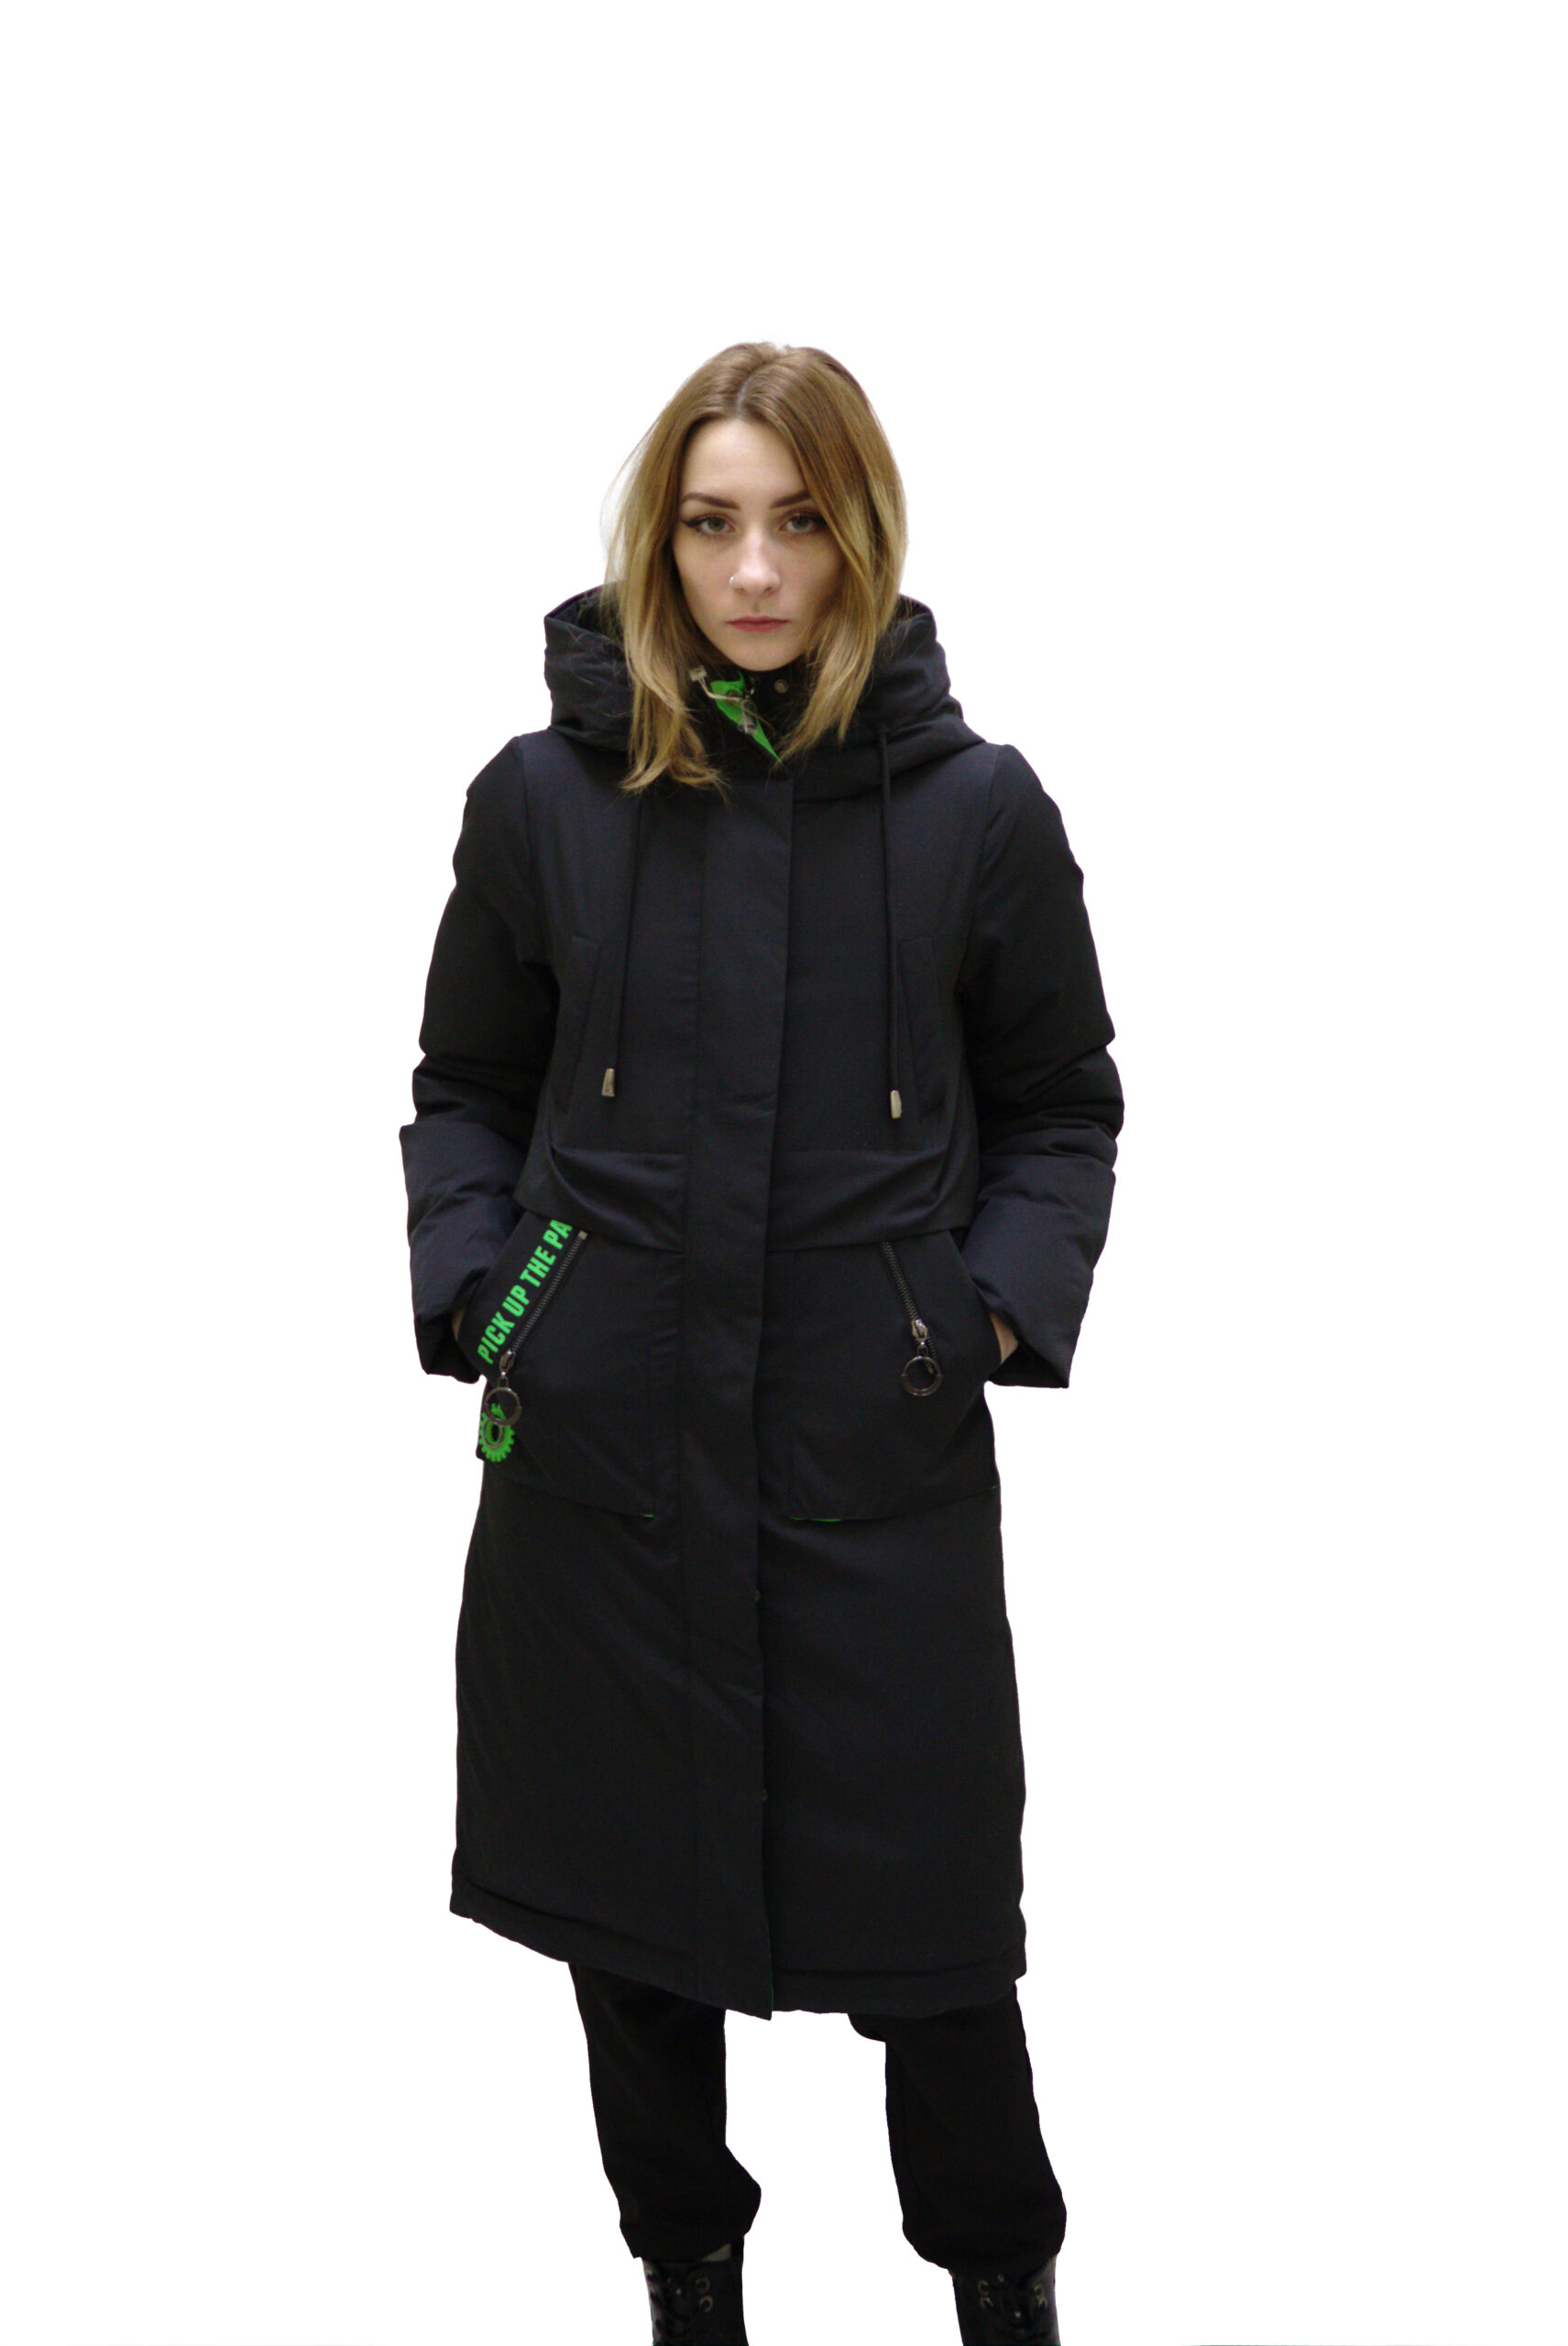 Зимняя женская куртка (FineBabyCat)